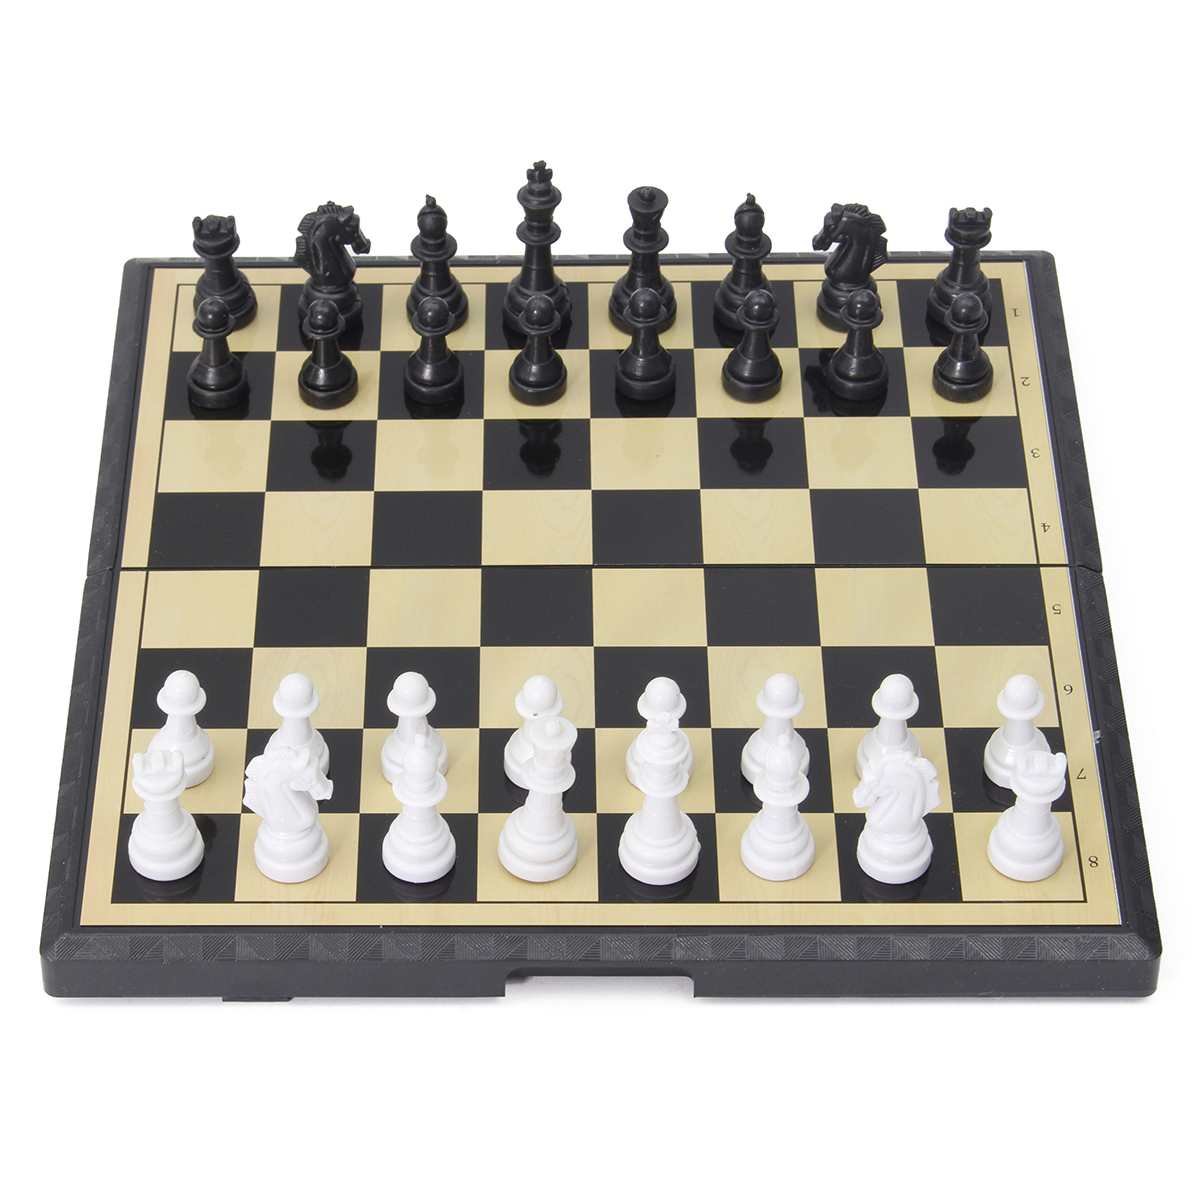 Как расставлять шахматы на шахматной доске. Magnetic 3in1 шахматы. Шахматы магнитные 3in1 Chess Set 32x32. Шахматная доска. Расстановка шахмат.